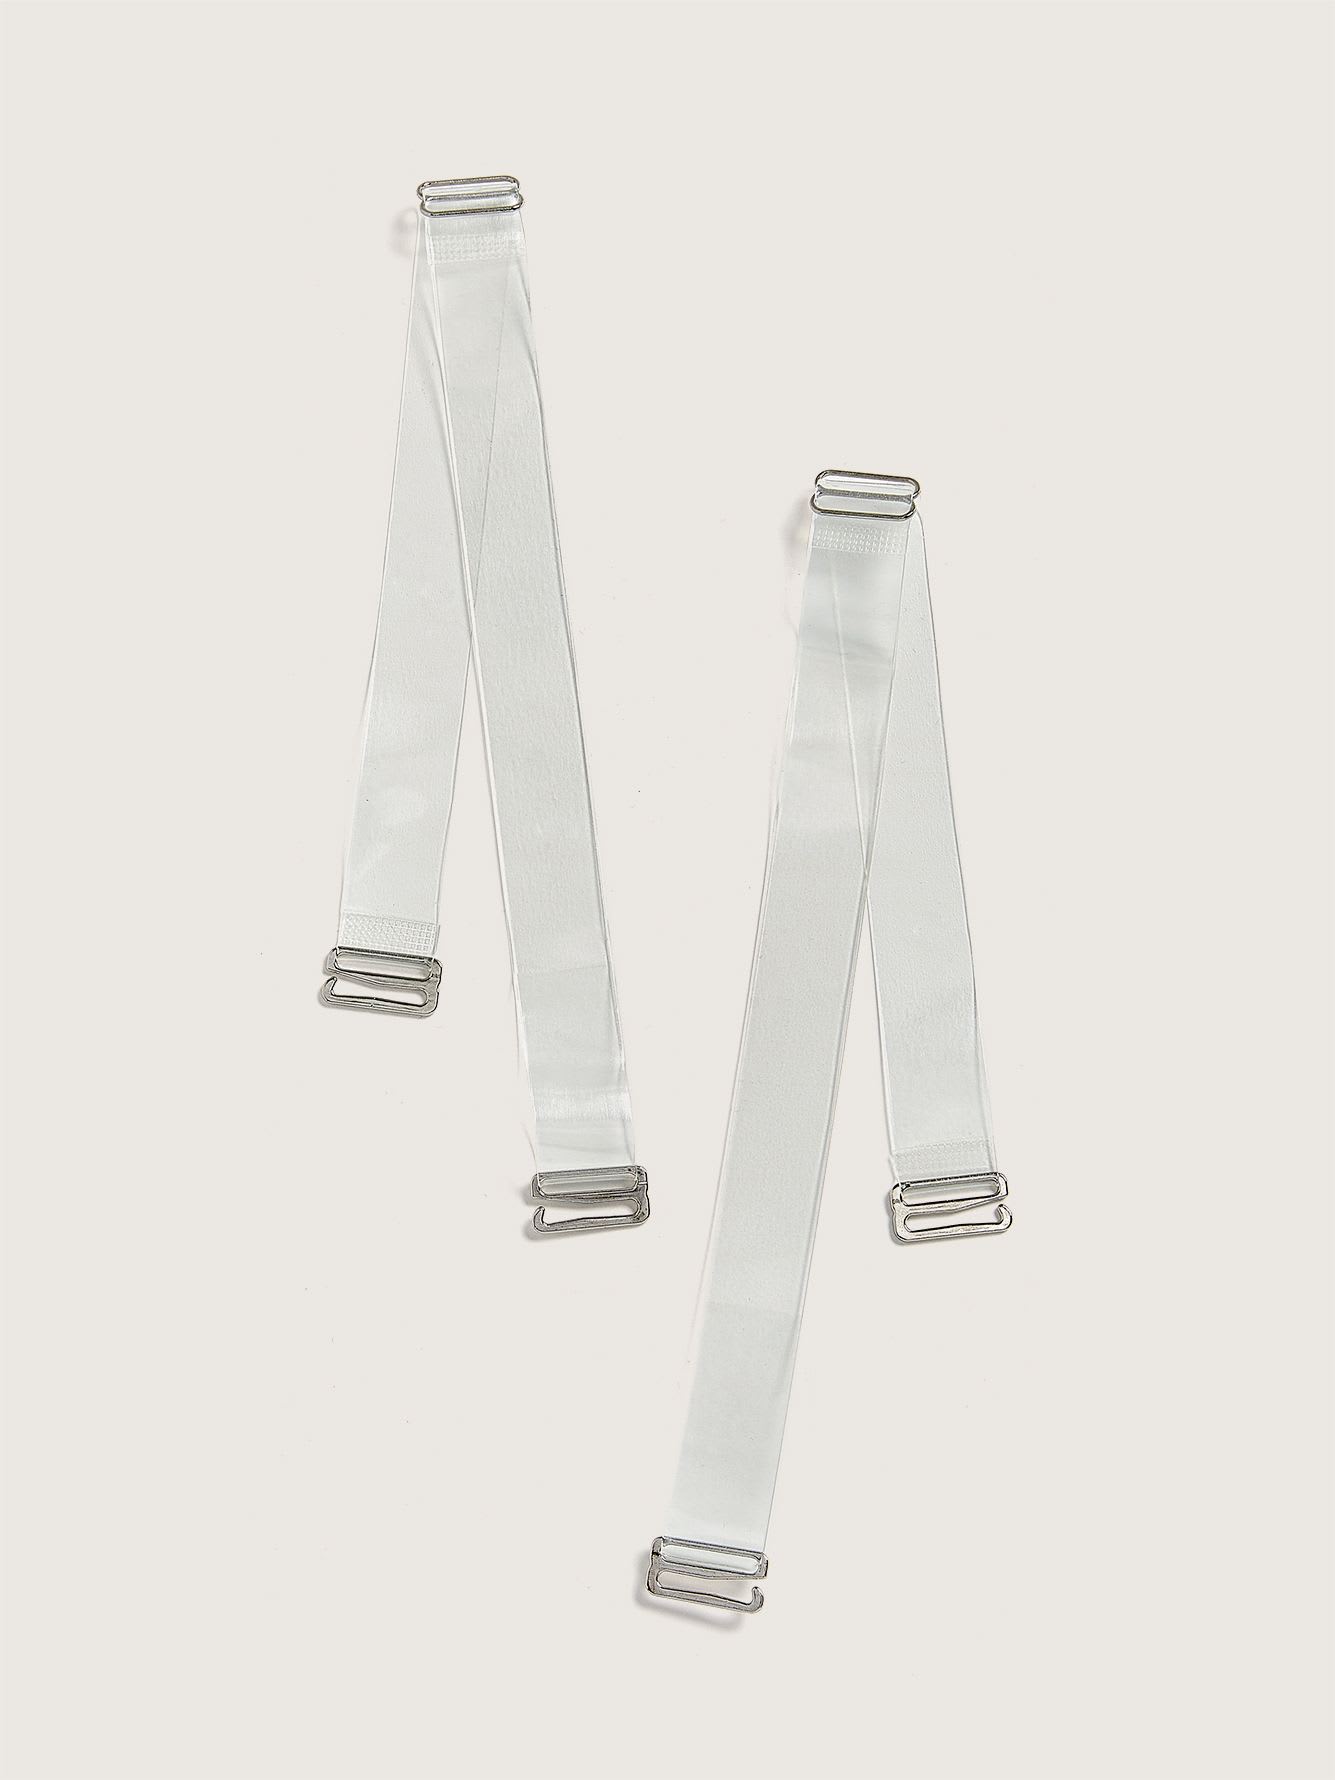 Bretelles transparentes pour soutien-gorge, 2 paires - BeConfident